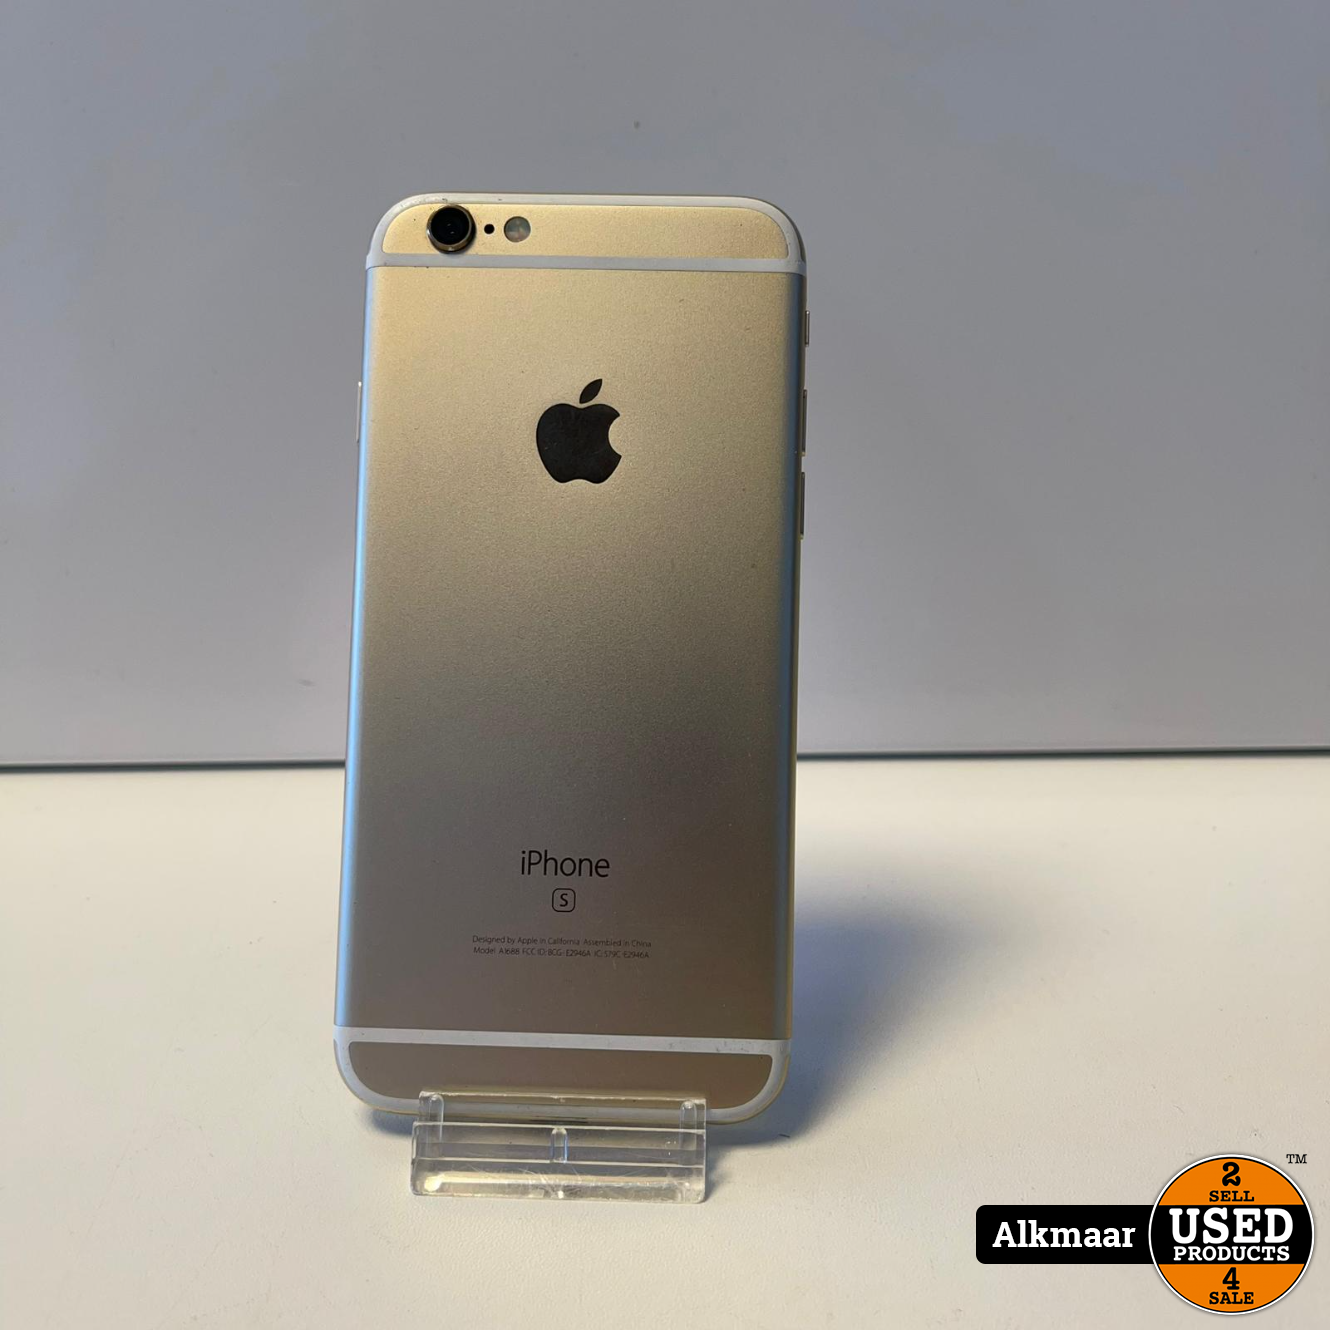 Rijd weg Vulgariteit Historicus Apple iPhone 6s 16GB Goud | 100% | In nette staat - Used Products Alkmaar